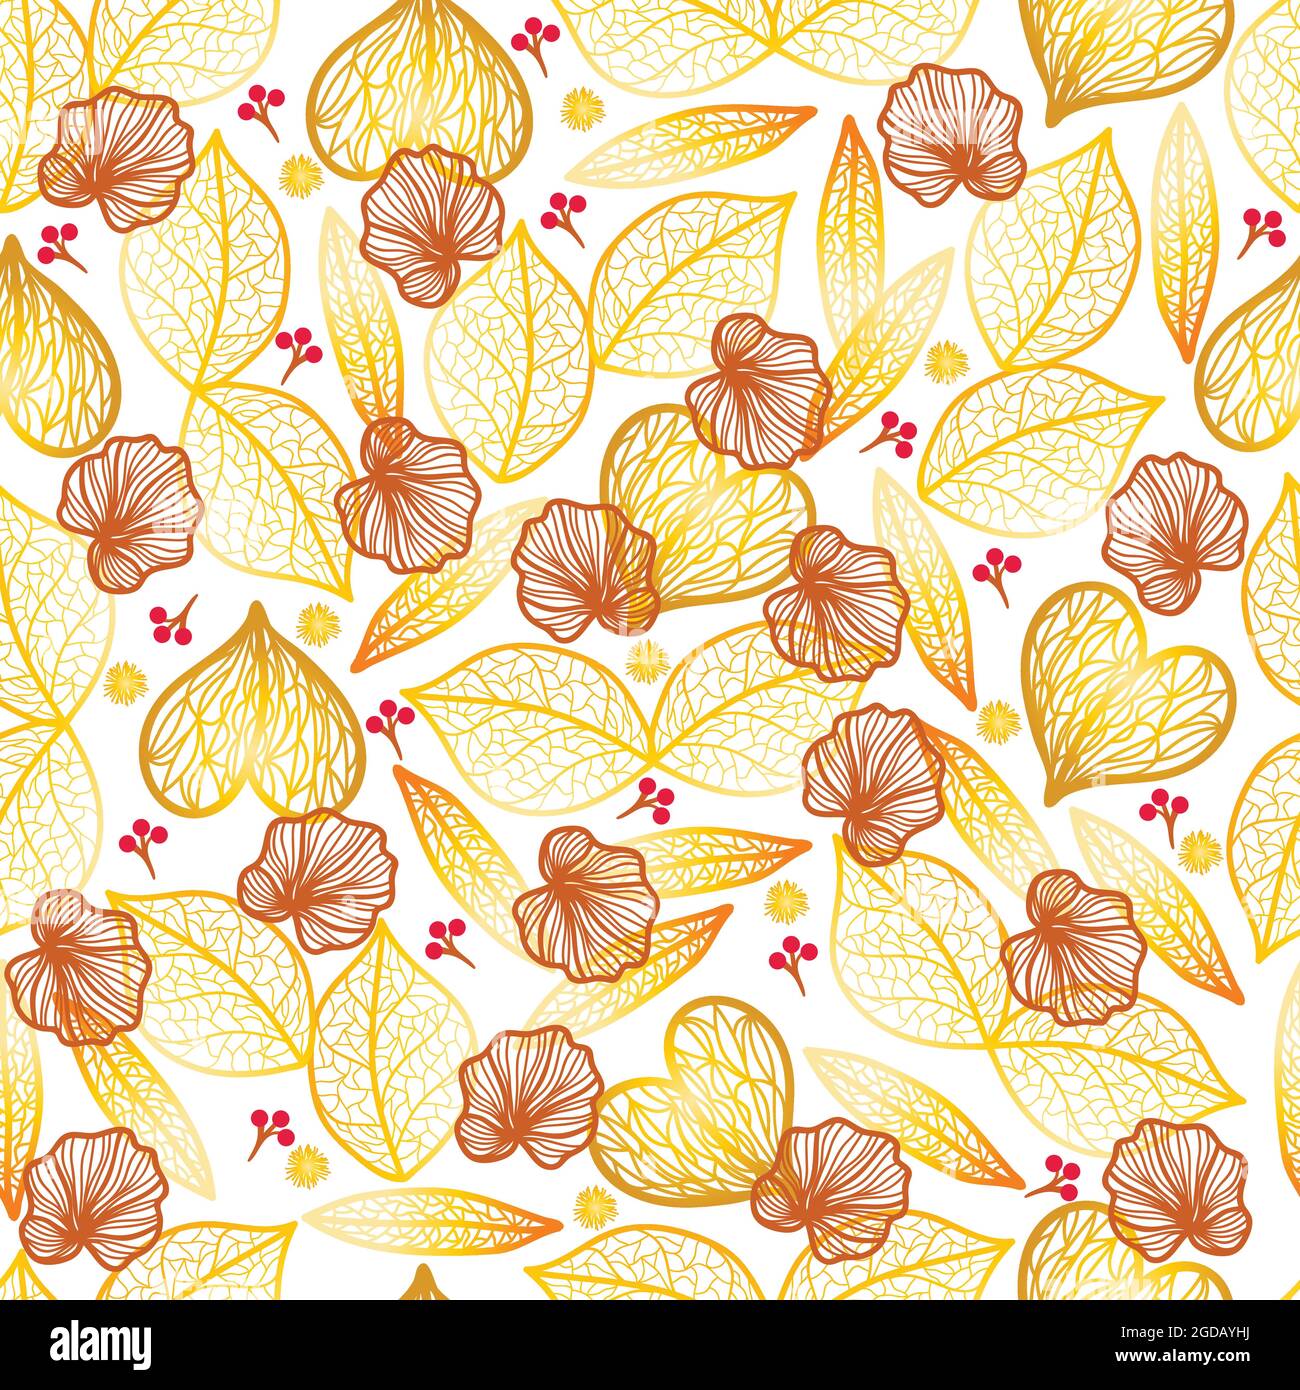 Goldfarbene filigrane Blätter, braune Herbstblätter und kleine rote Früchte auf transparentem Hintergrund Stock Vektor